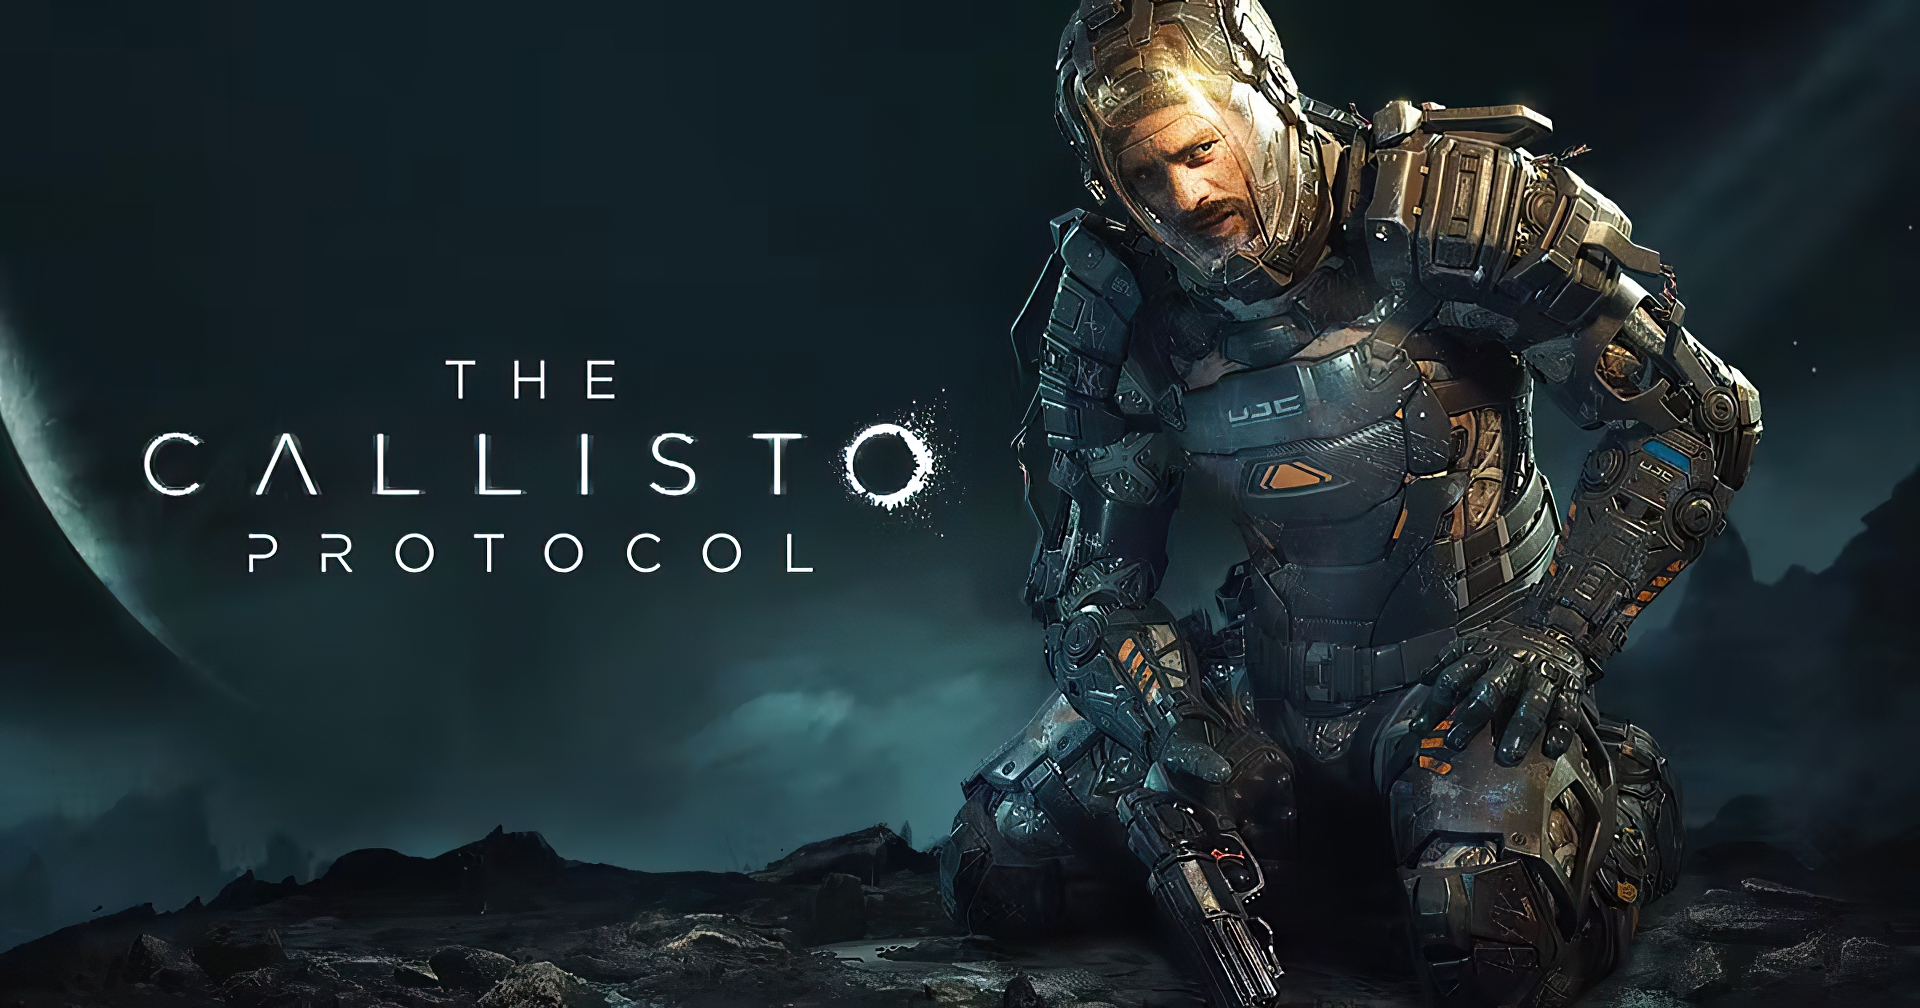 Por que novo game de terror Callisto Protocol foi proibido no